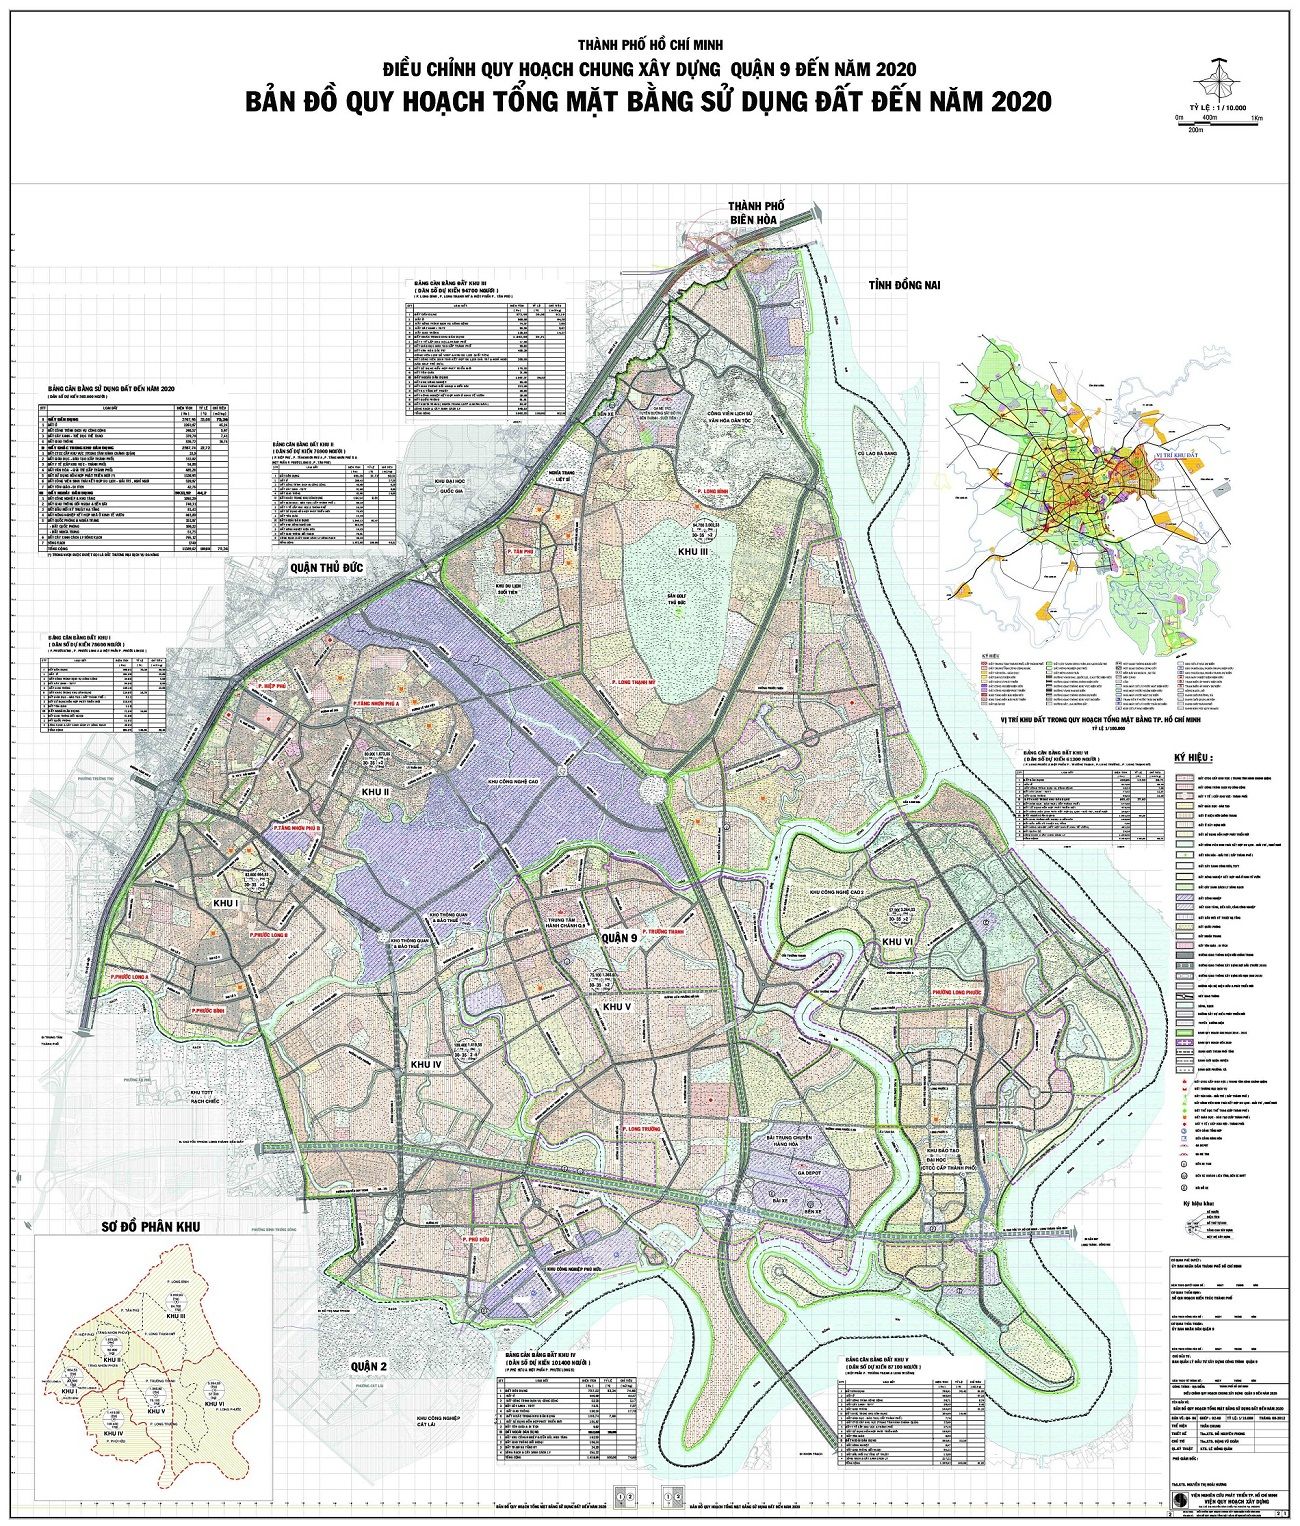 Bản đồ quy hoạch chung xây dựng quận 9 đến năm 2020 